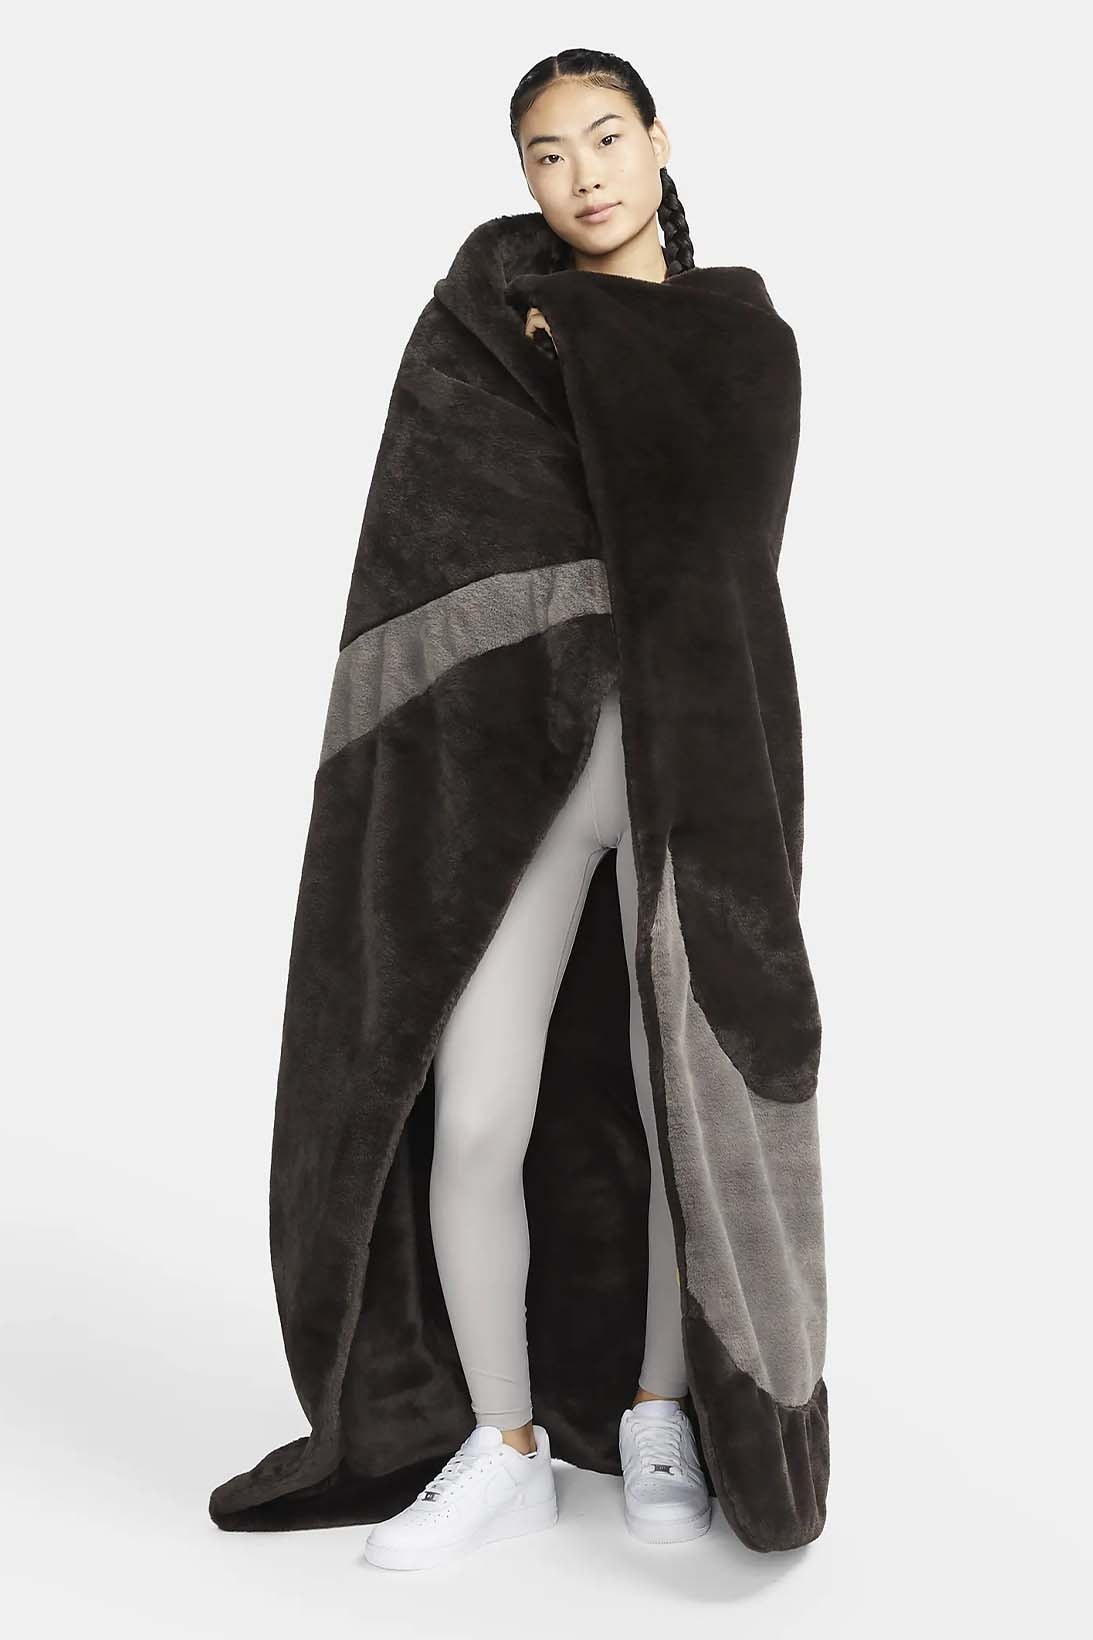 nike sportswear blanket faux fur swoosh logo pinkfoam velvet brown do3793-220 do3793-640 cave stone release date